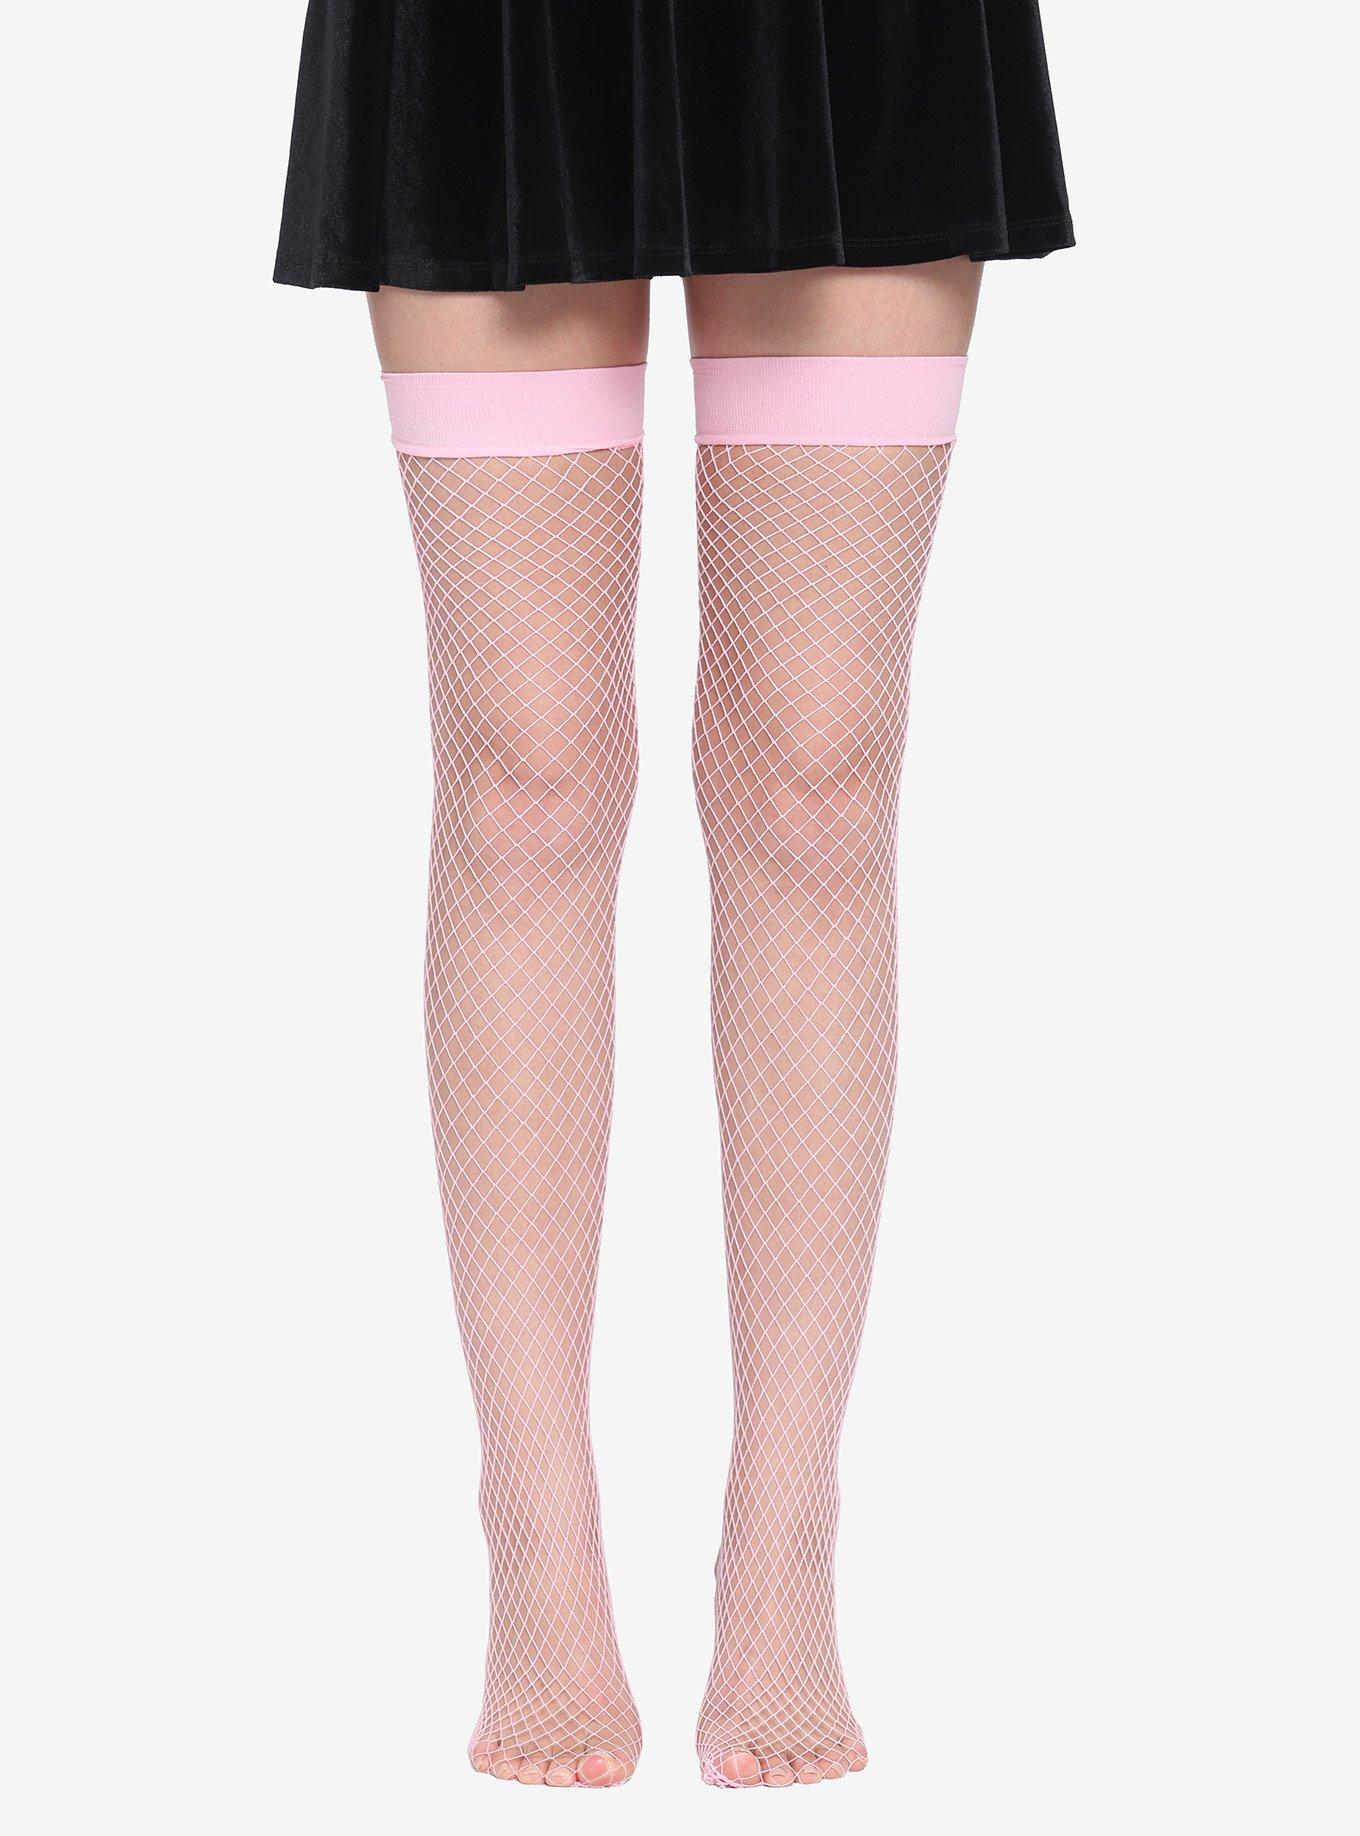 Atomic Pink Fishnet Thigh High Stockings